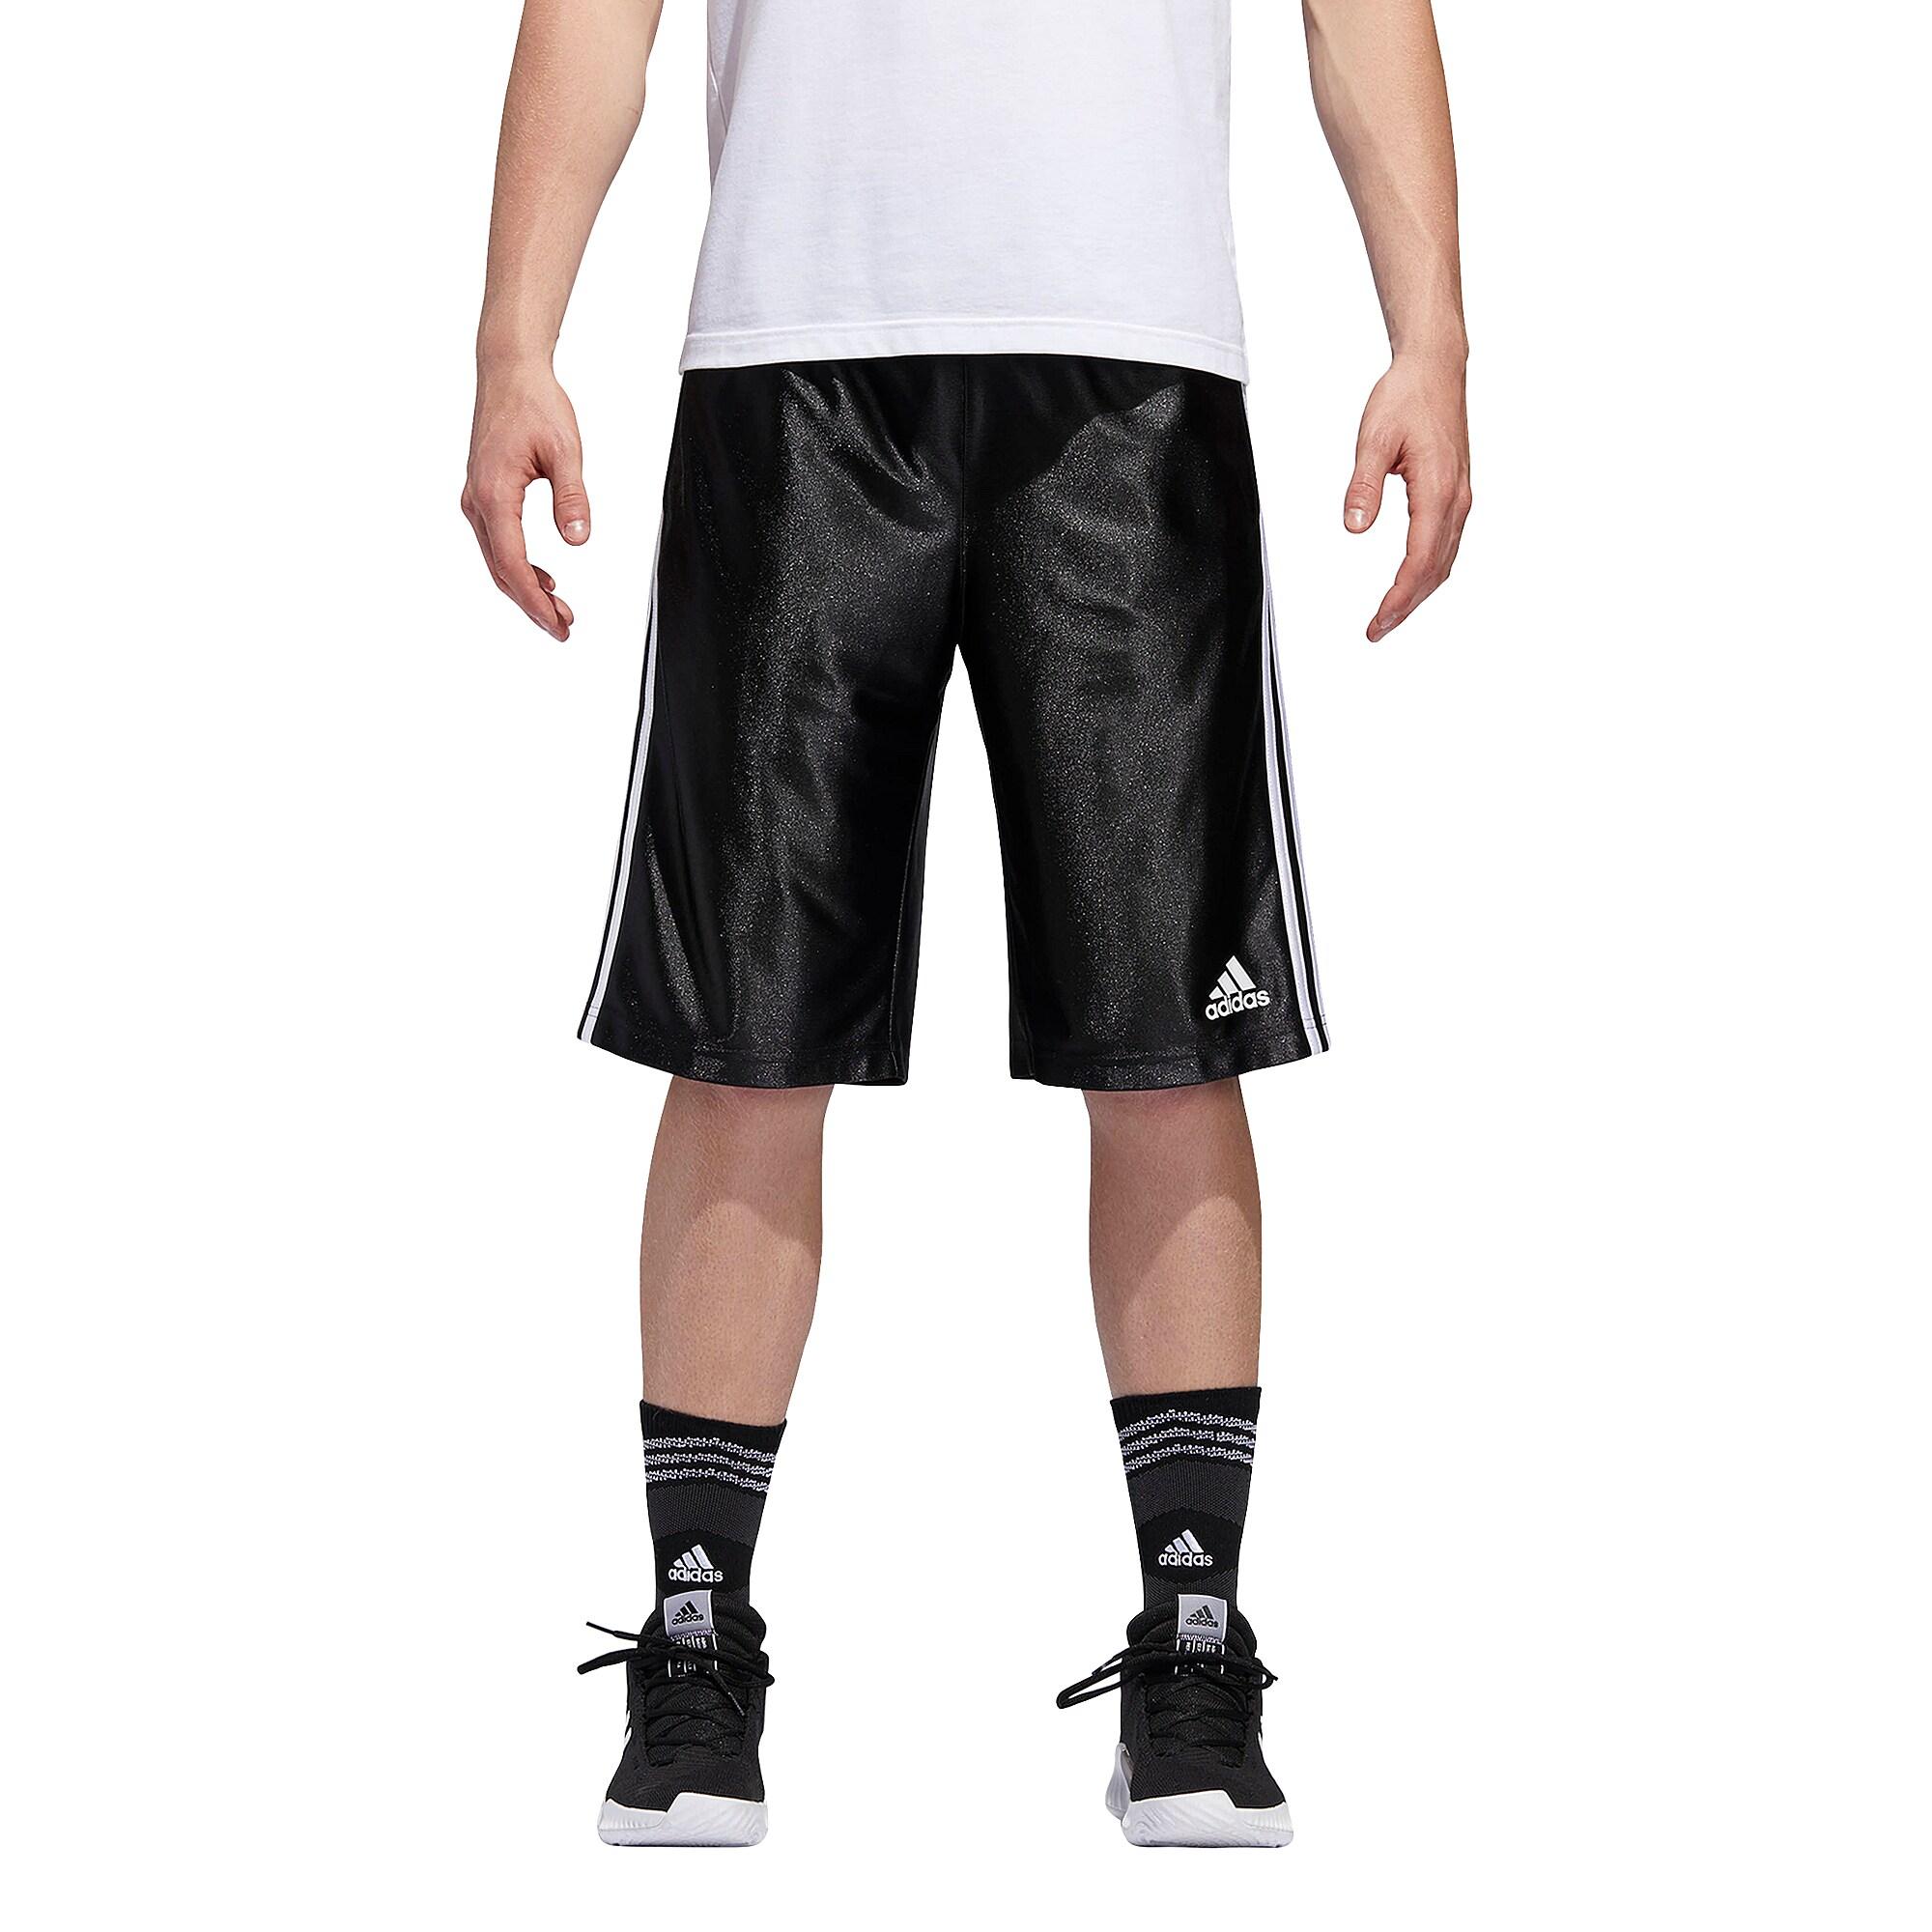 adidas basic 4 shorts